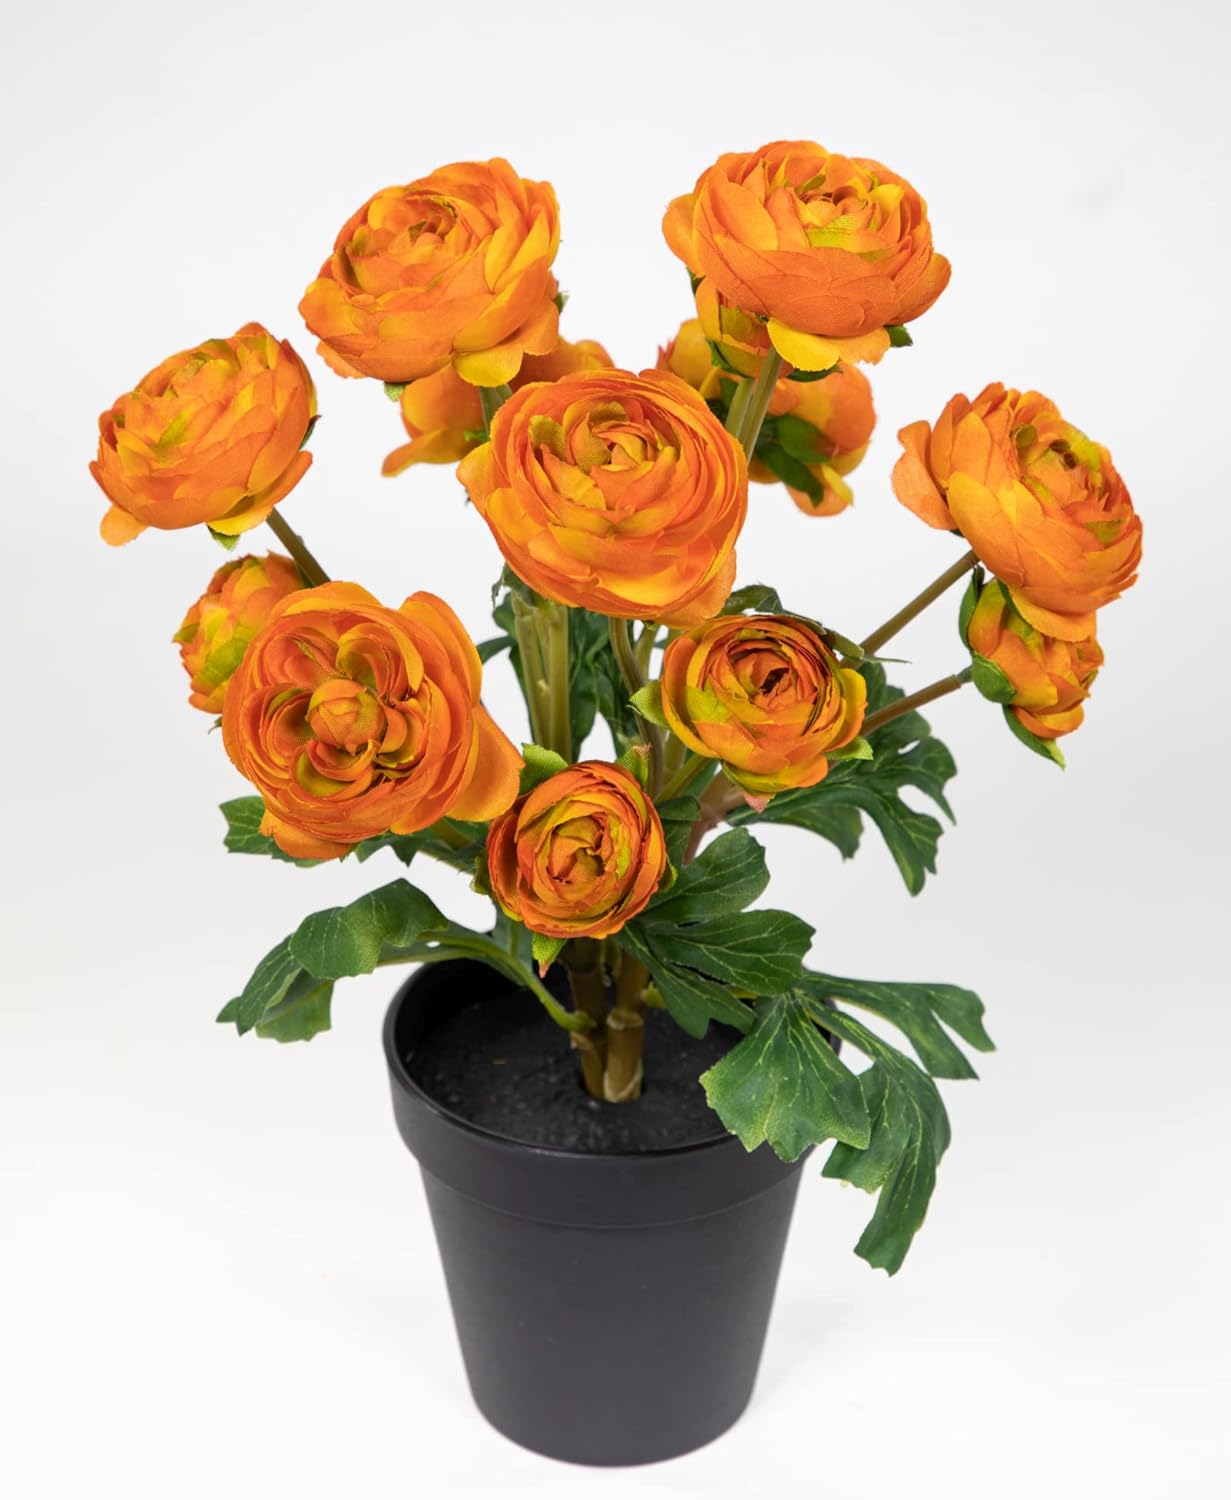 Ranunkelbusch Natural 32cm orange im Topf DP Kunstpflanzen Kunstblumen künstliche Ranunkel Blumen